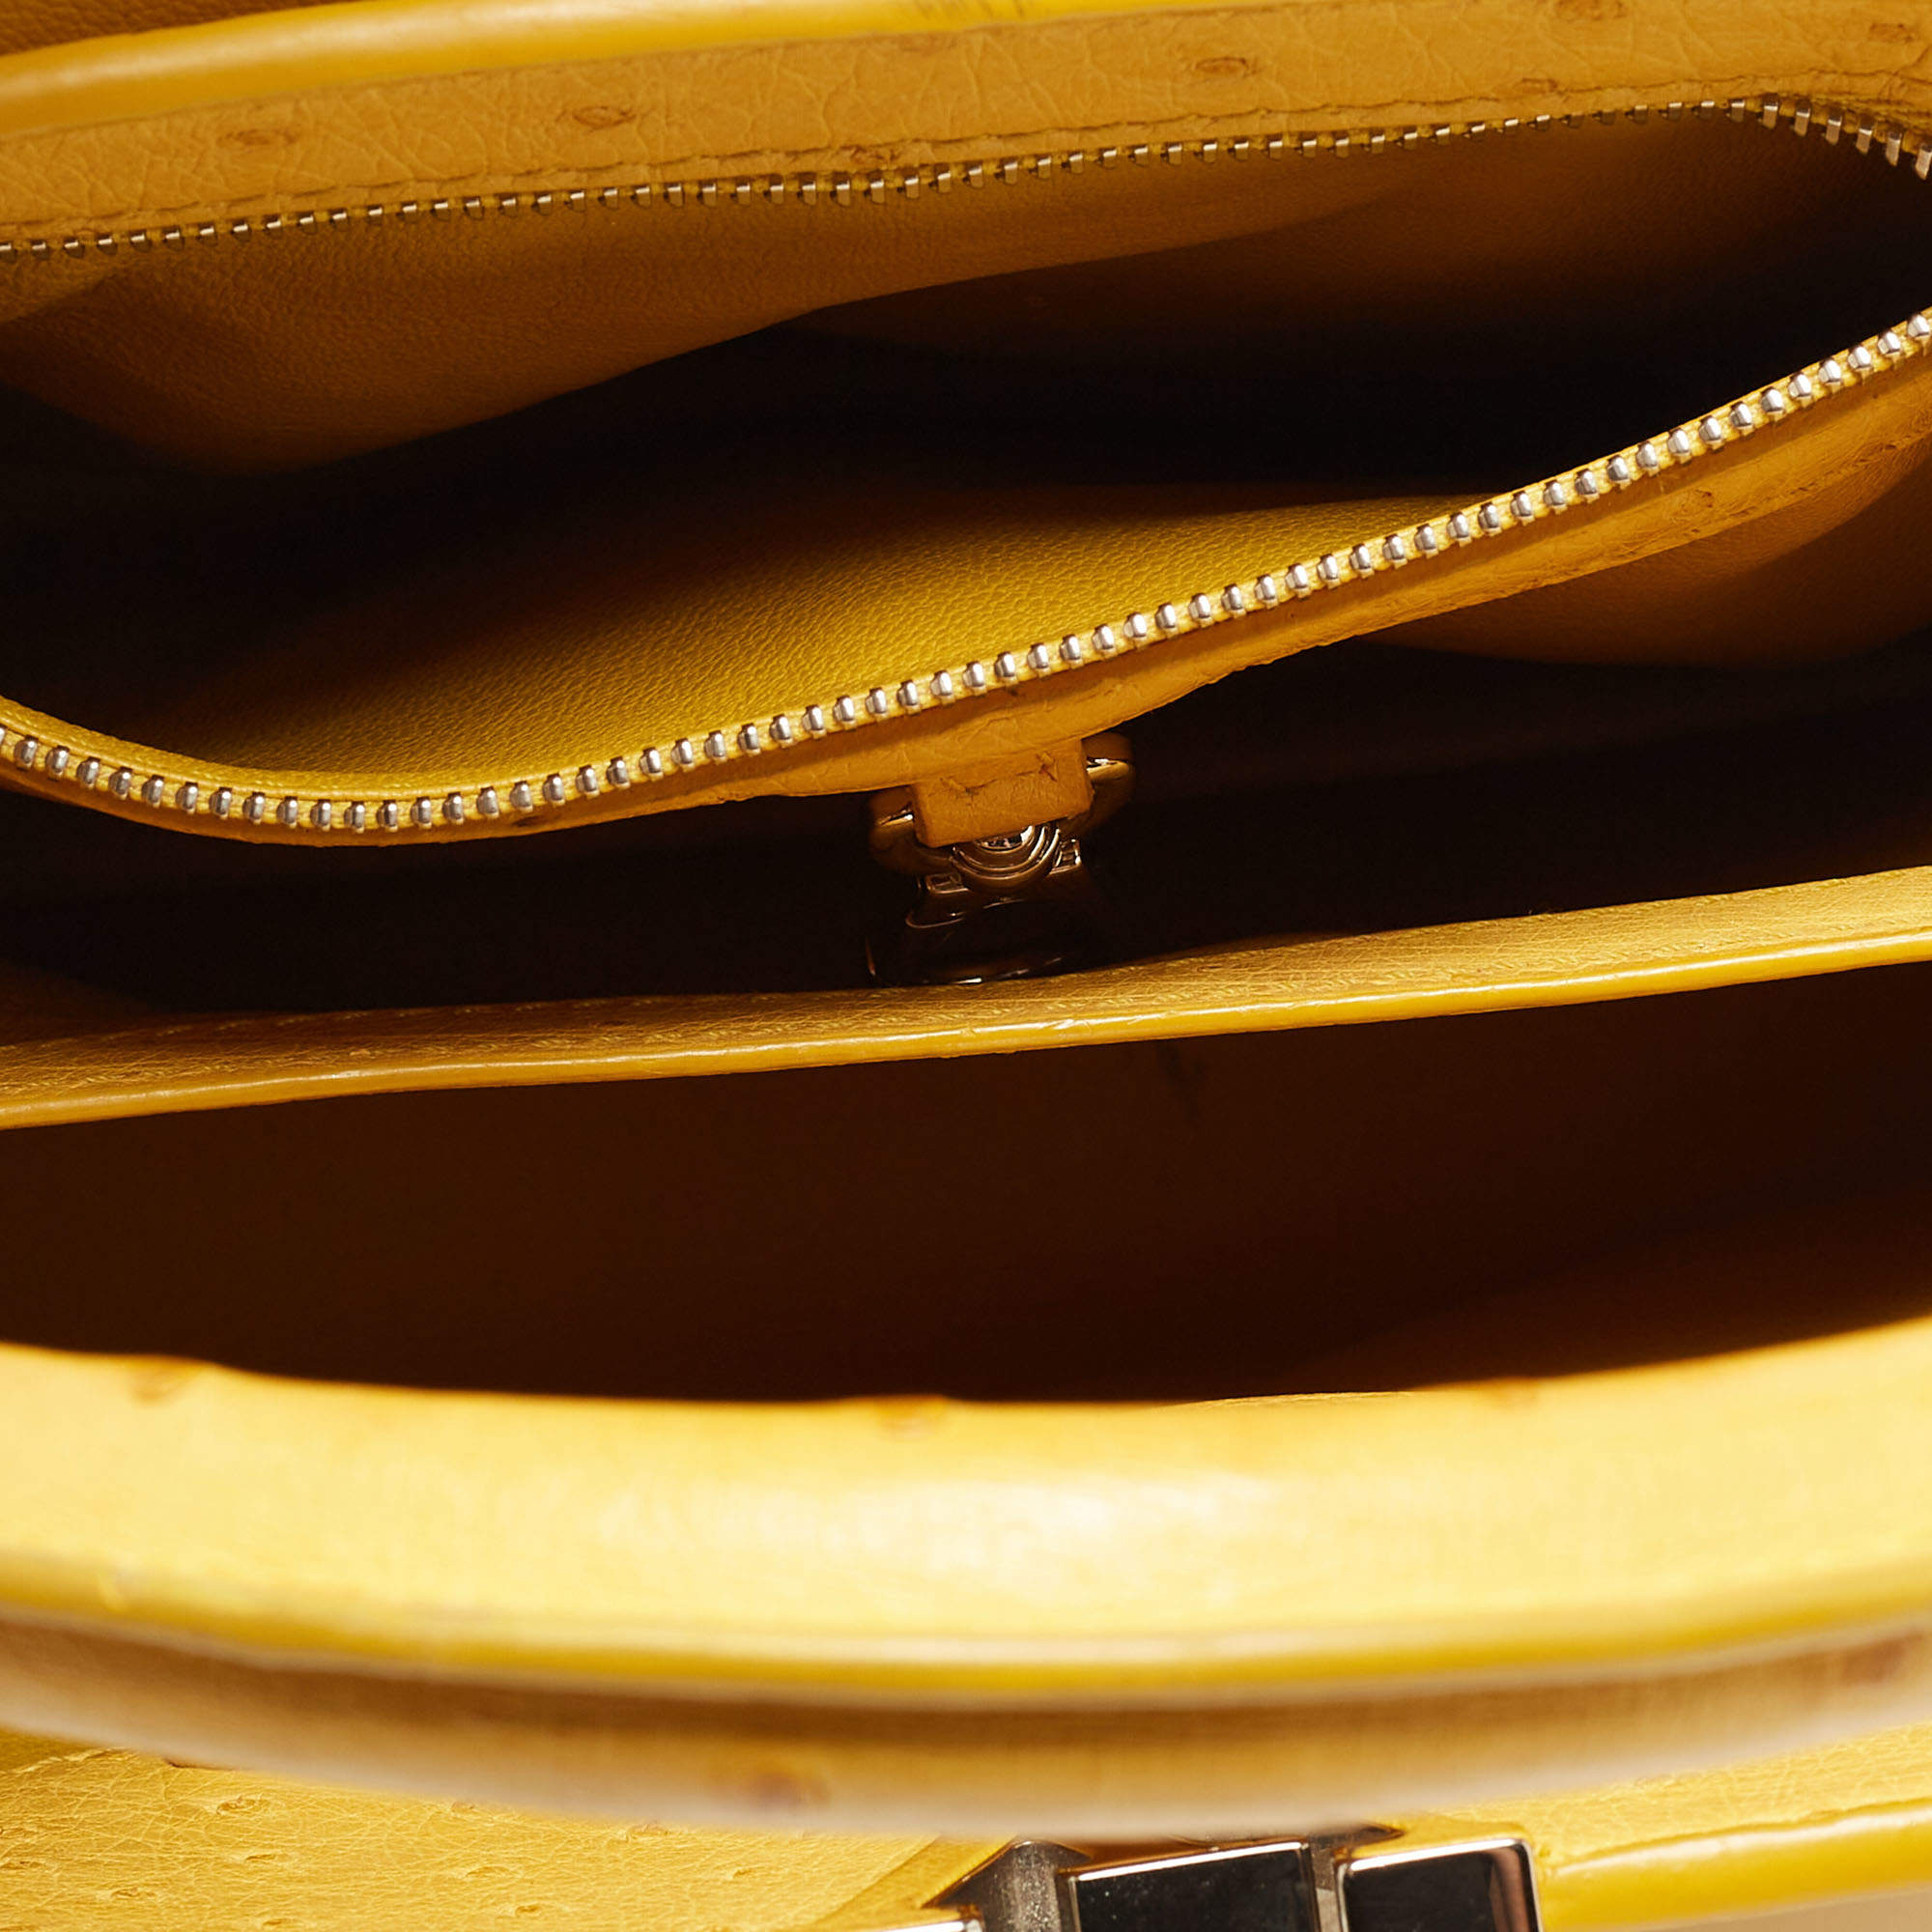 Capucines ostrich handbag Louis Vuitton Yellow in Ostrich - 36431888